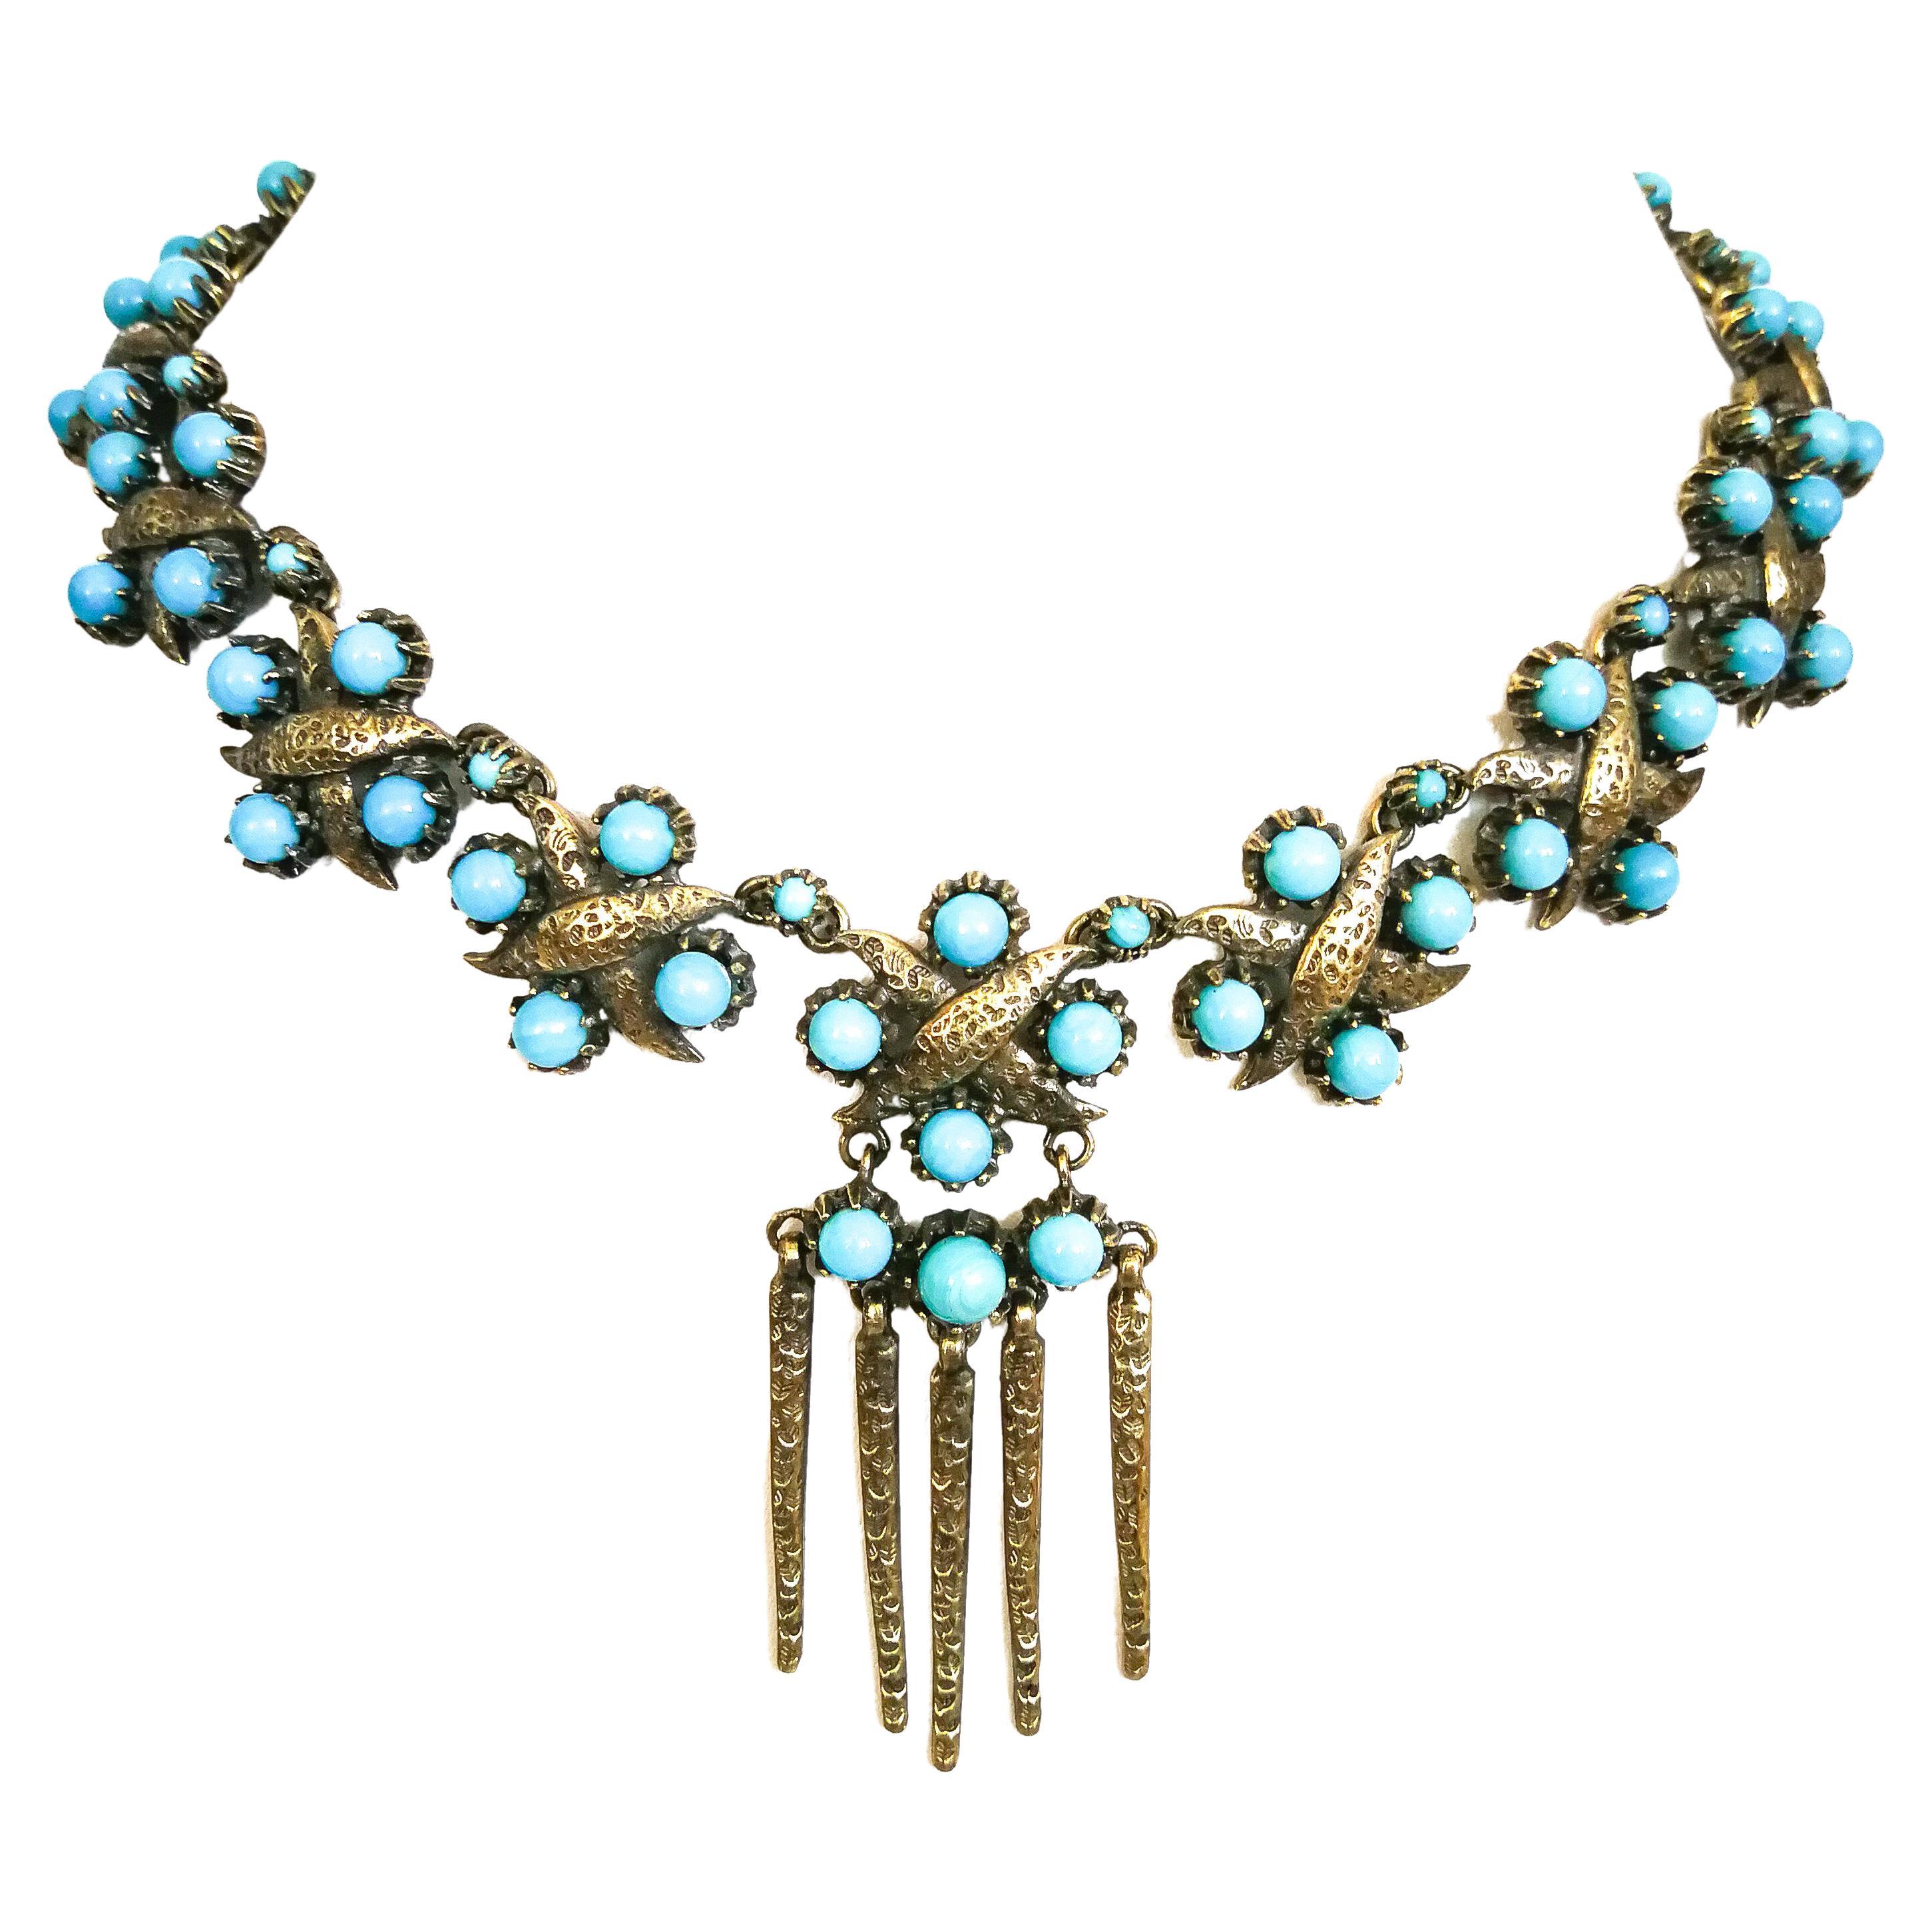 Halskette aus vergoldetem Metall und türkisfarbenen Glasperlen, Christian Dior, 1950er Jahre.